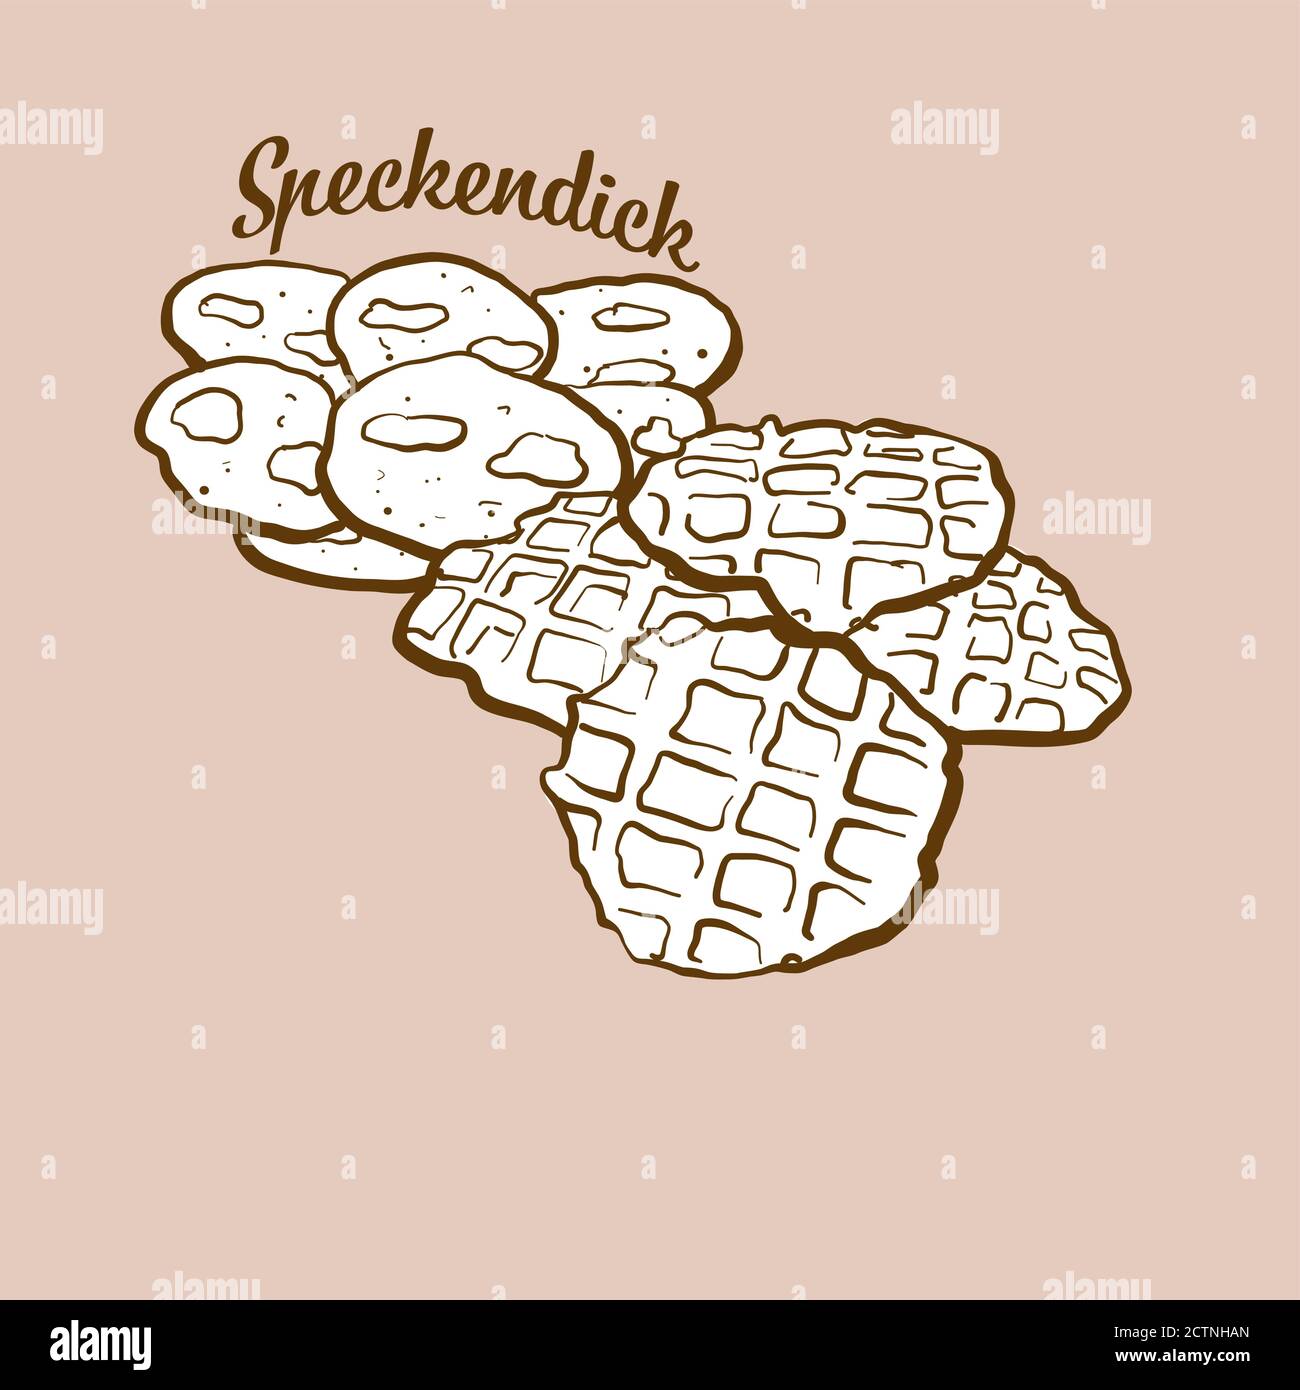 Handgezeichnete Speckendick-Brot-Illustration. Pfannkuchen, in Deutschland, Ostfriesland bekannt. Vektorzeichnen Serie. Stock Vektor